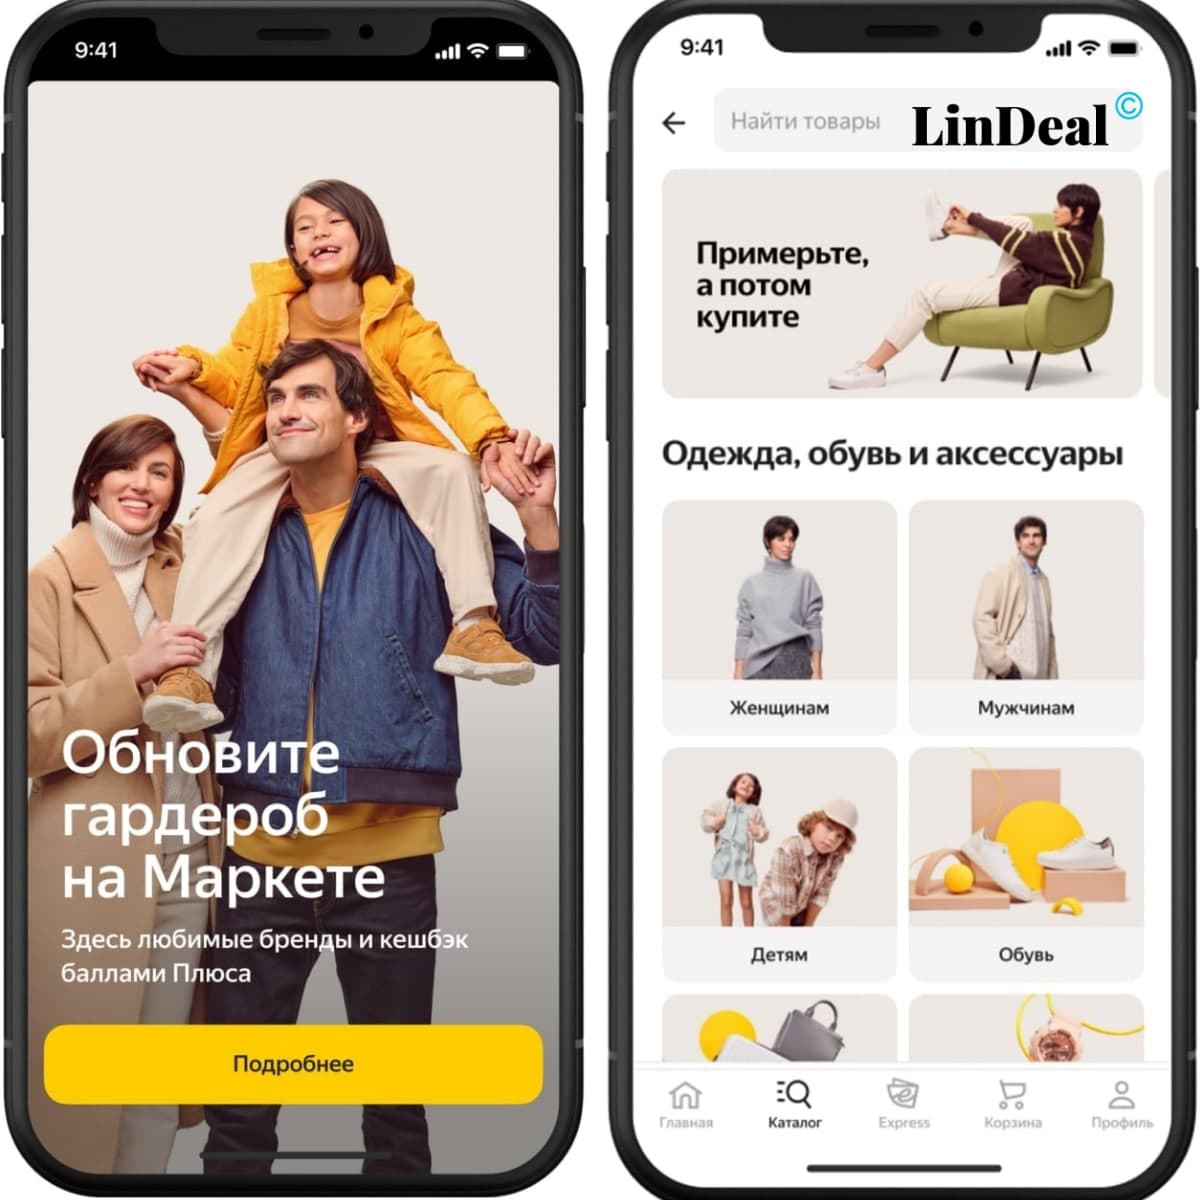 Пользователи «Яндекс.Маркет» могут оформить покупку одежды и обуви